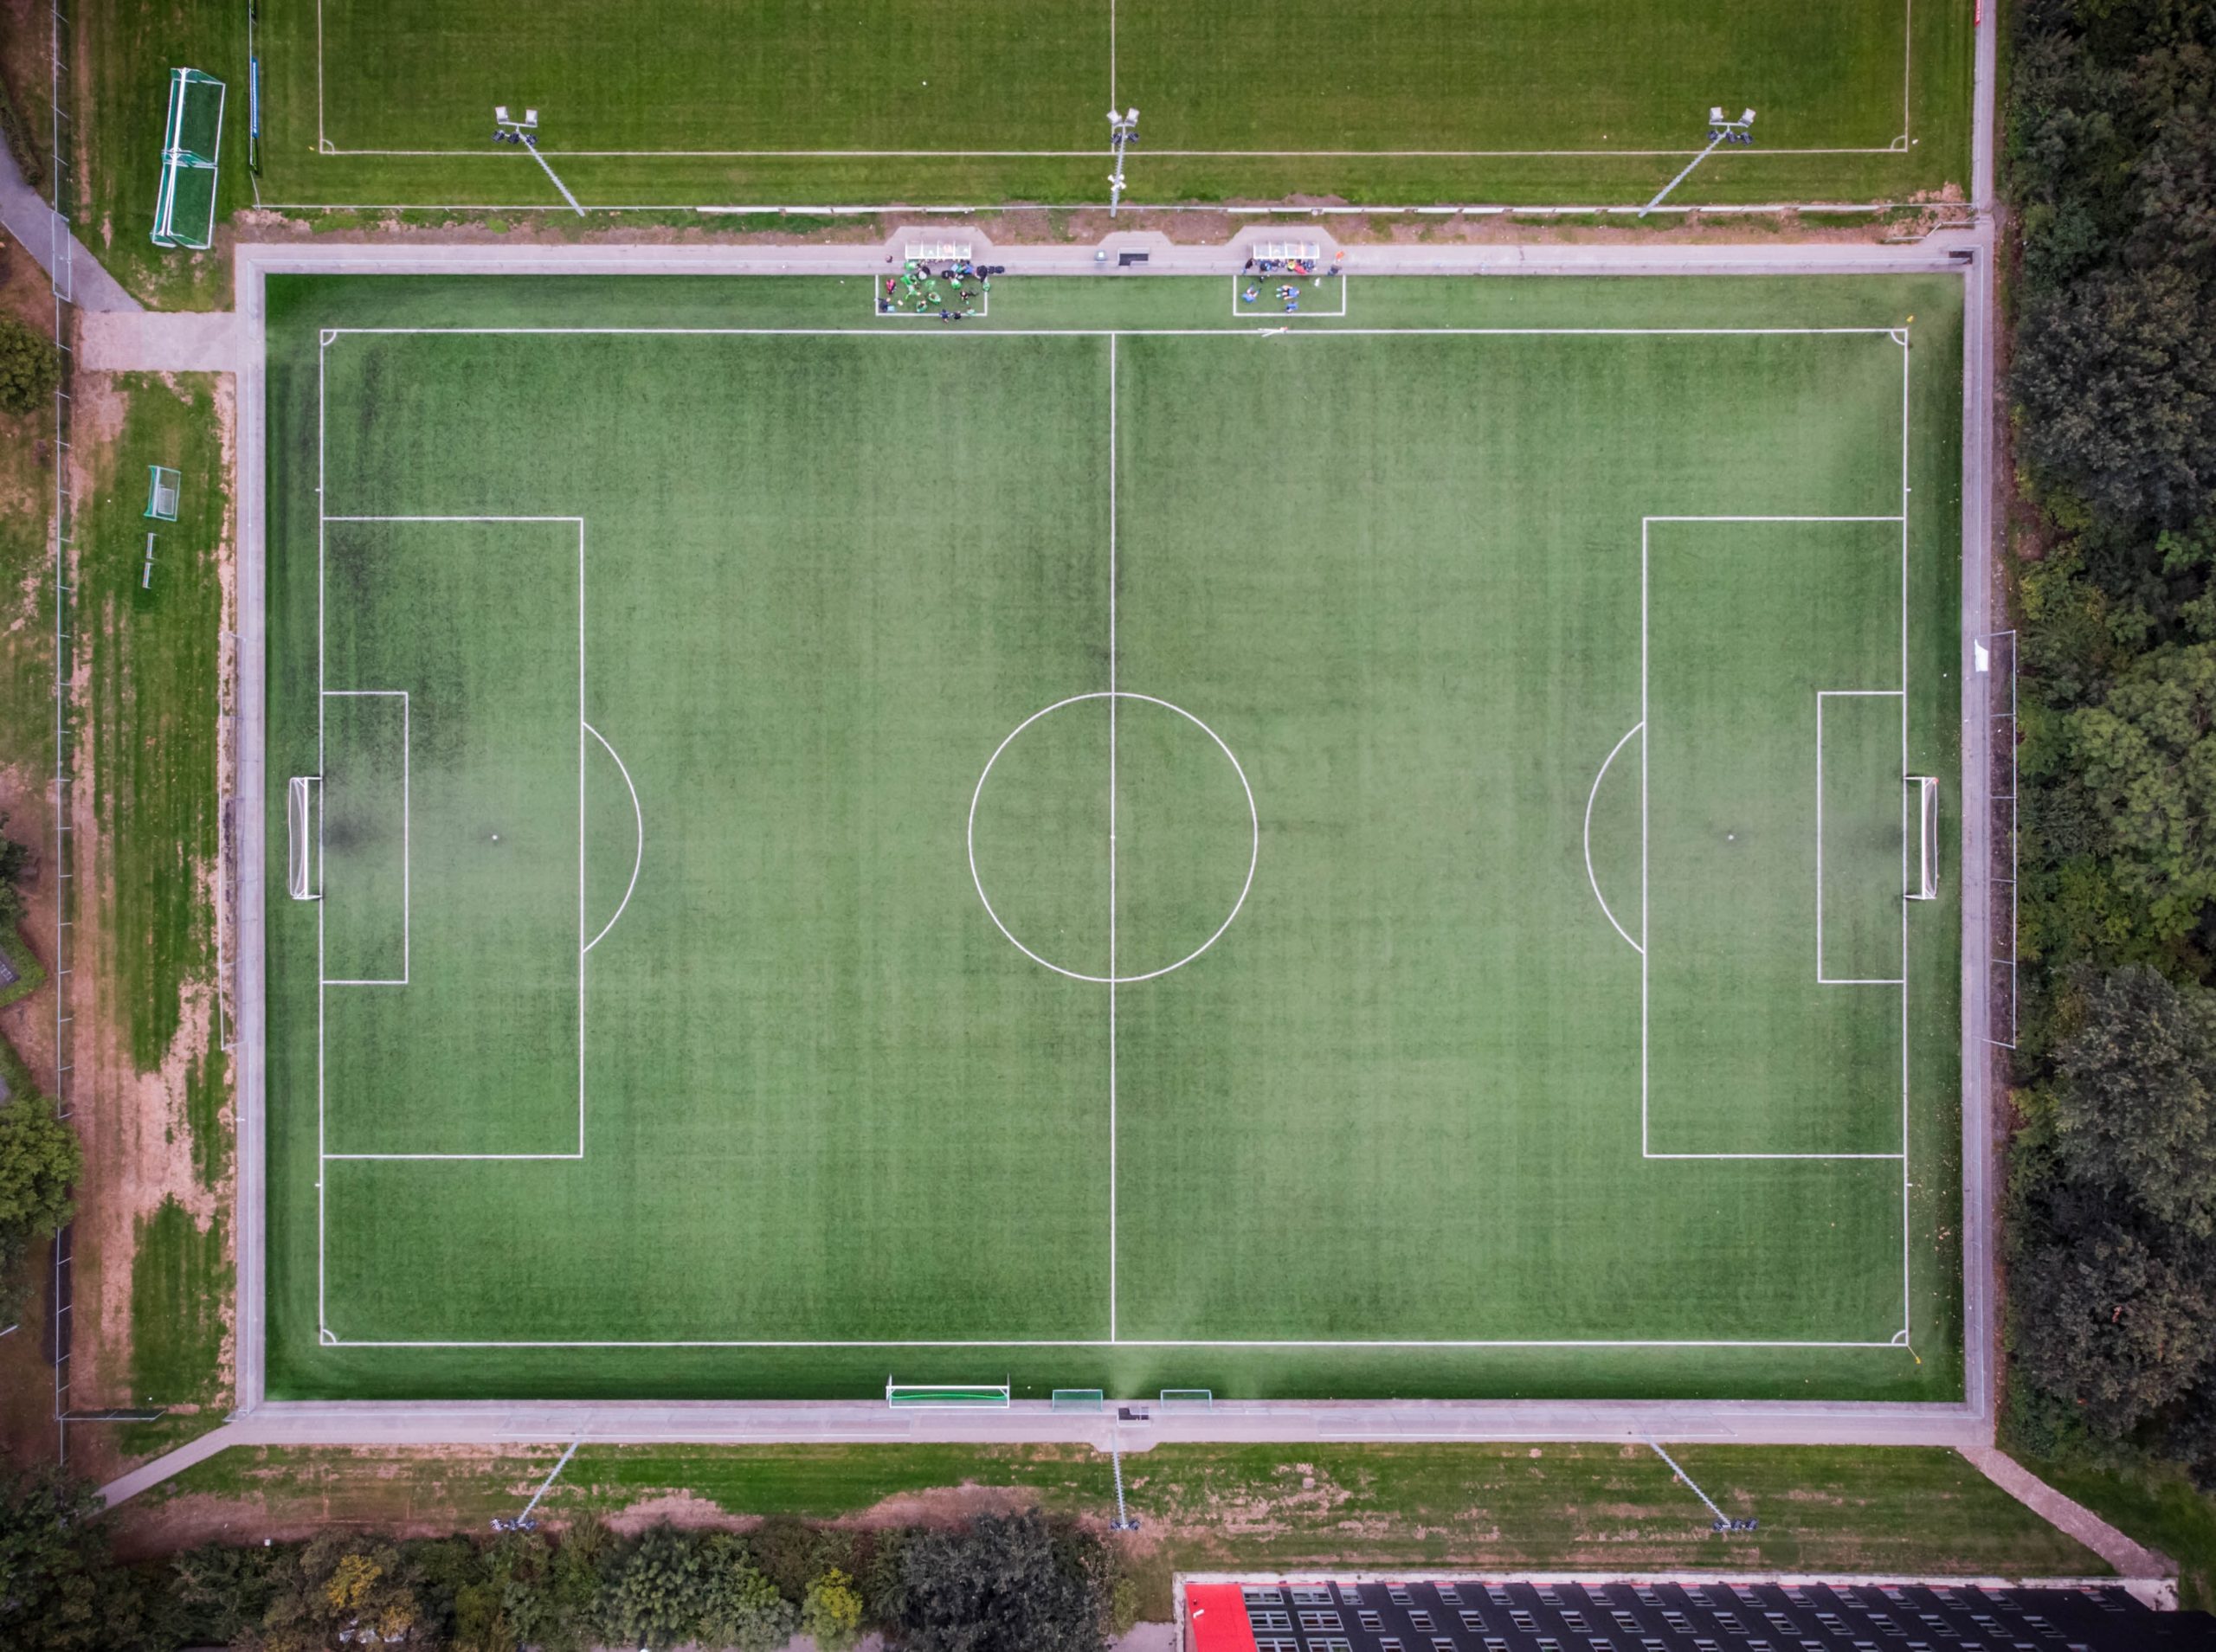 Campo de fútbol visto desde el aire